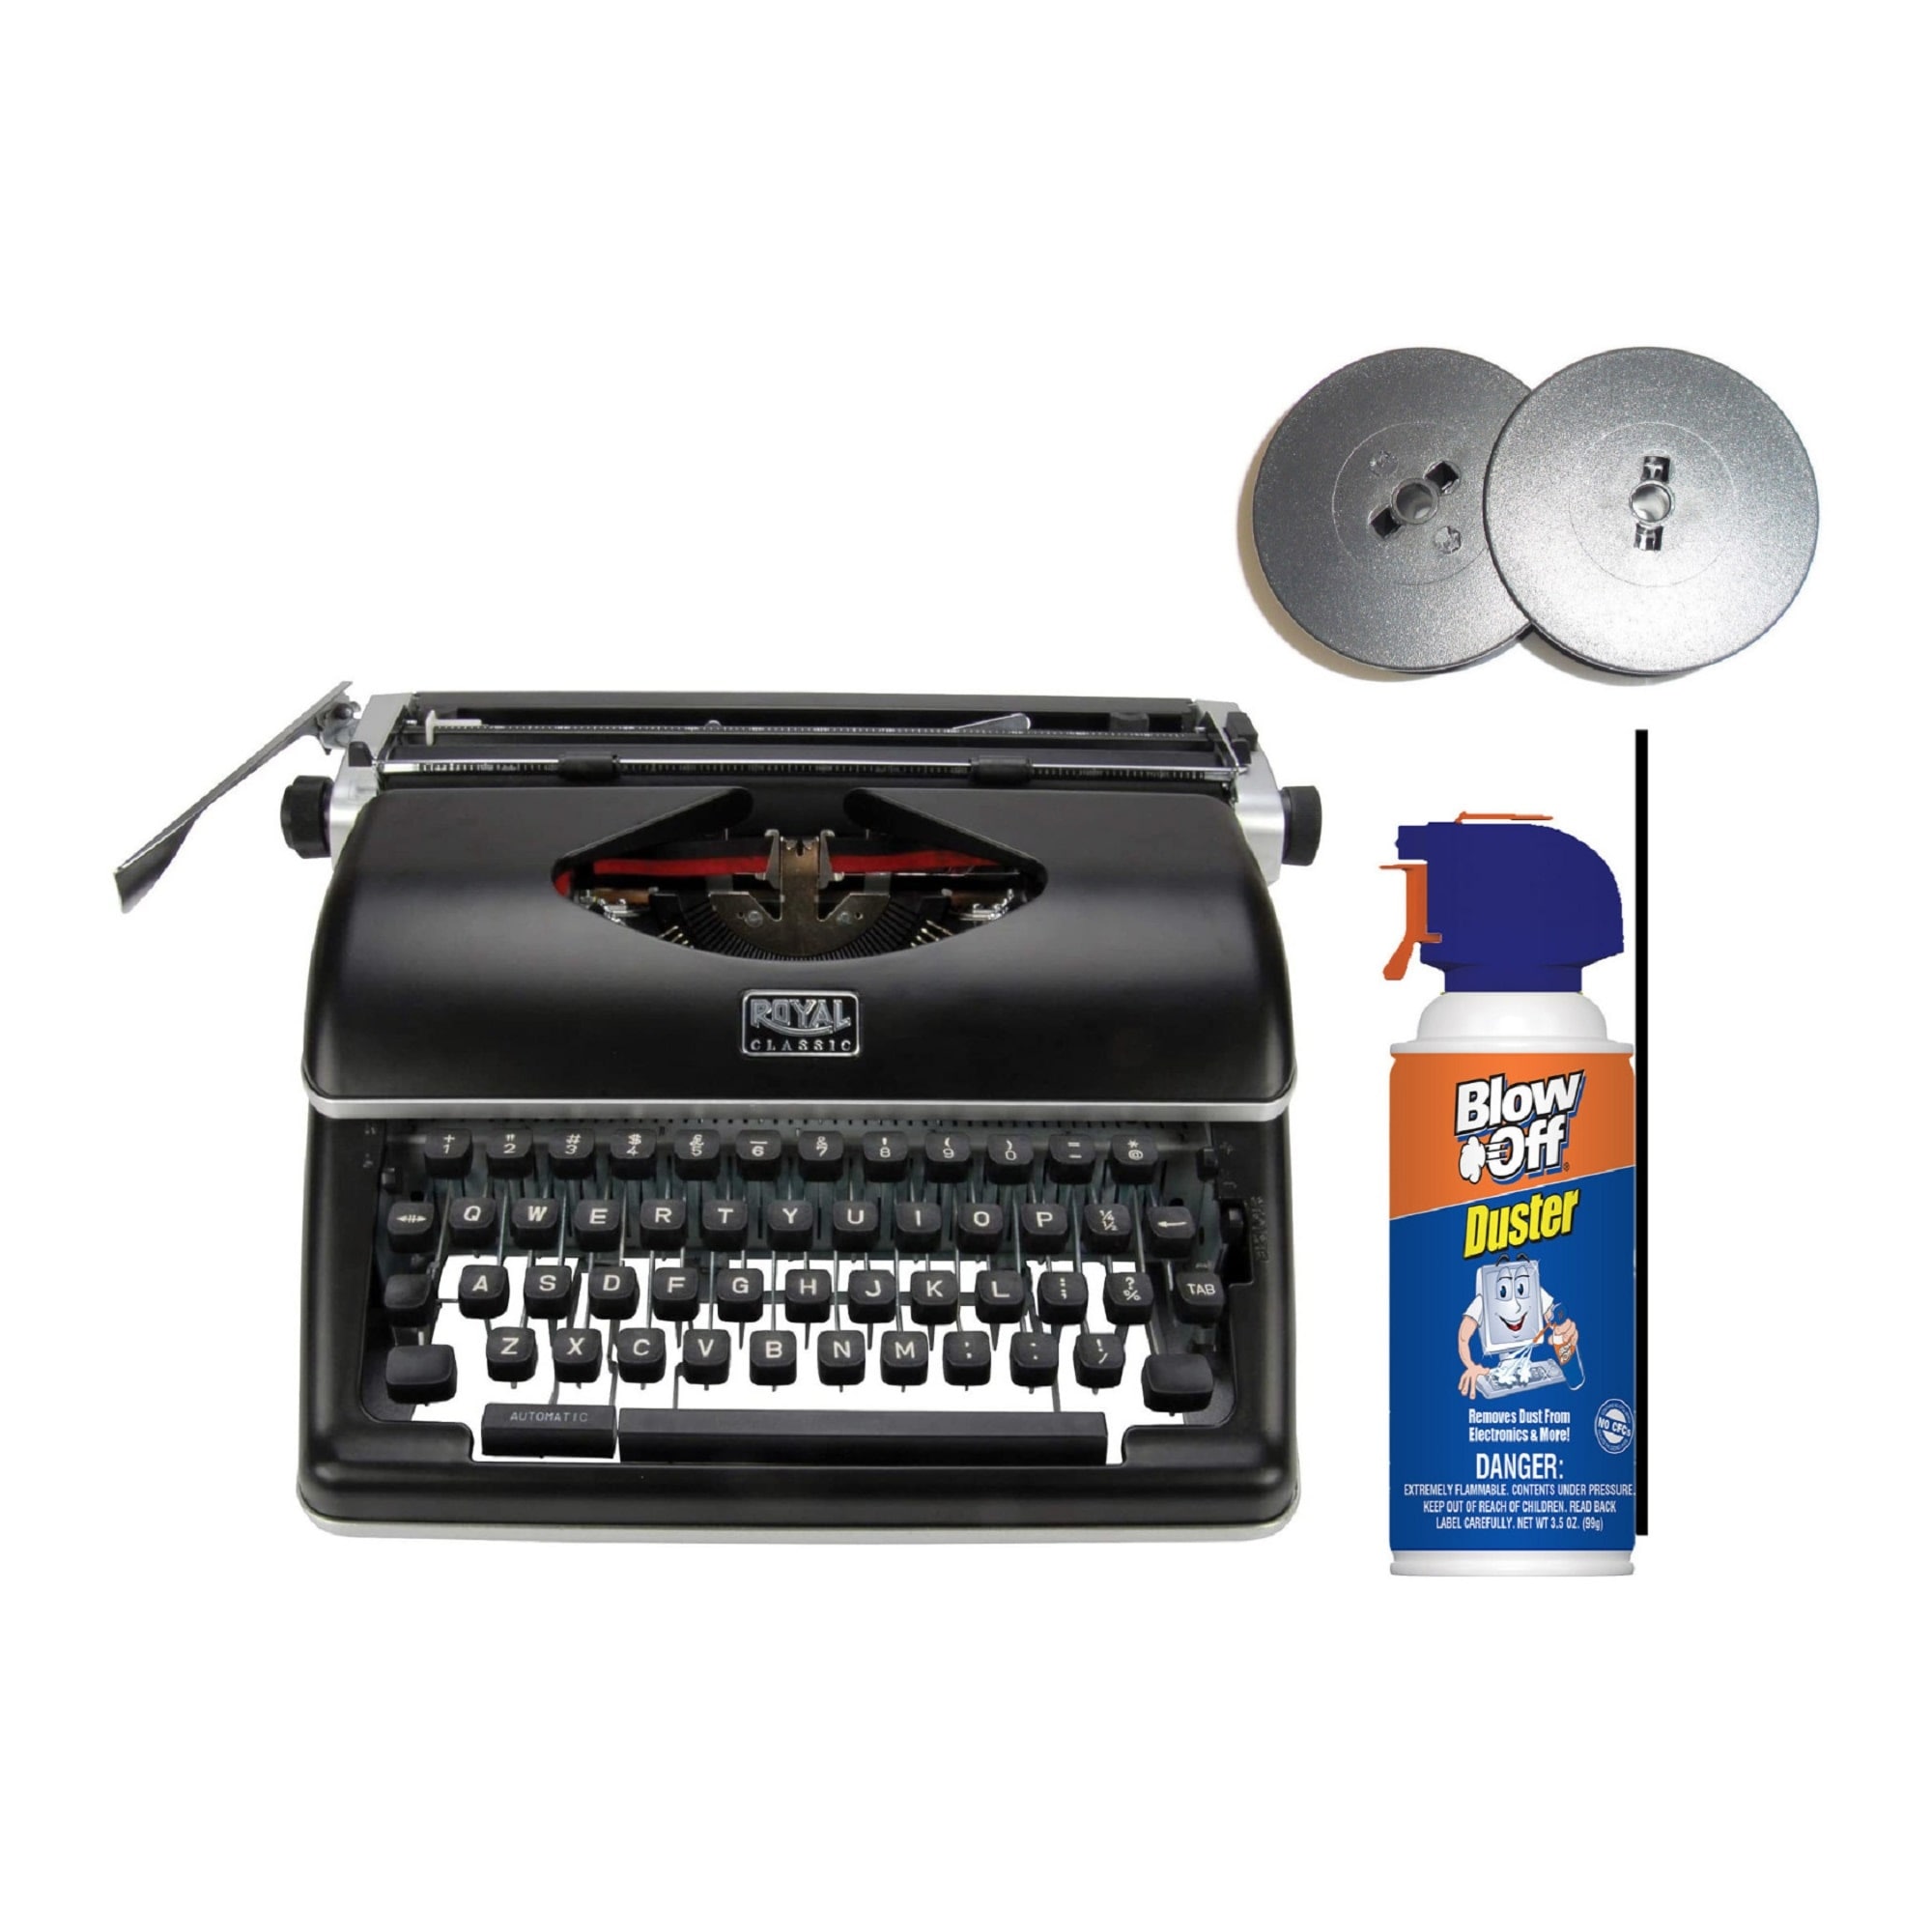 Royal Classic Manual Typewriter (Black) with Typewriter Ribbon Bundle - Black